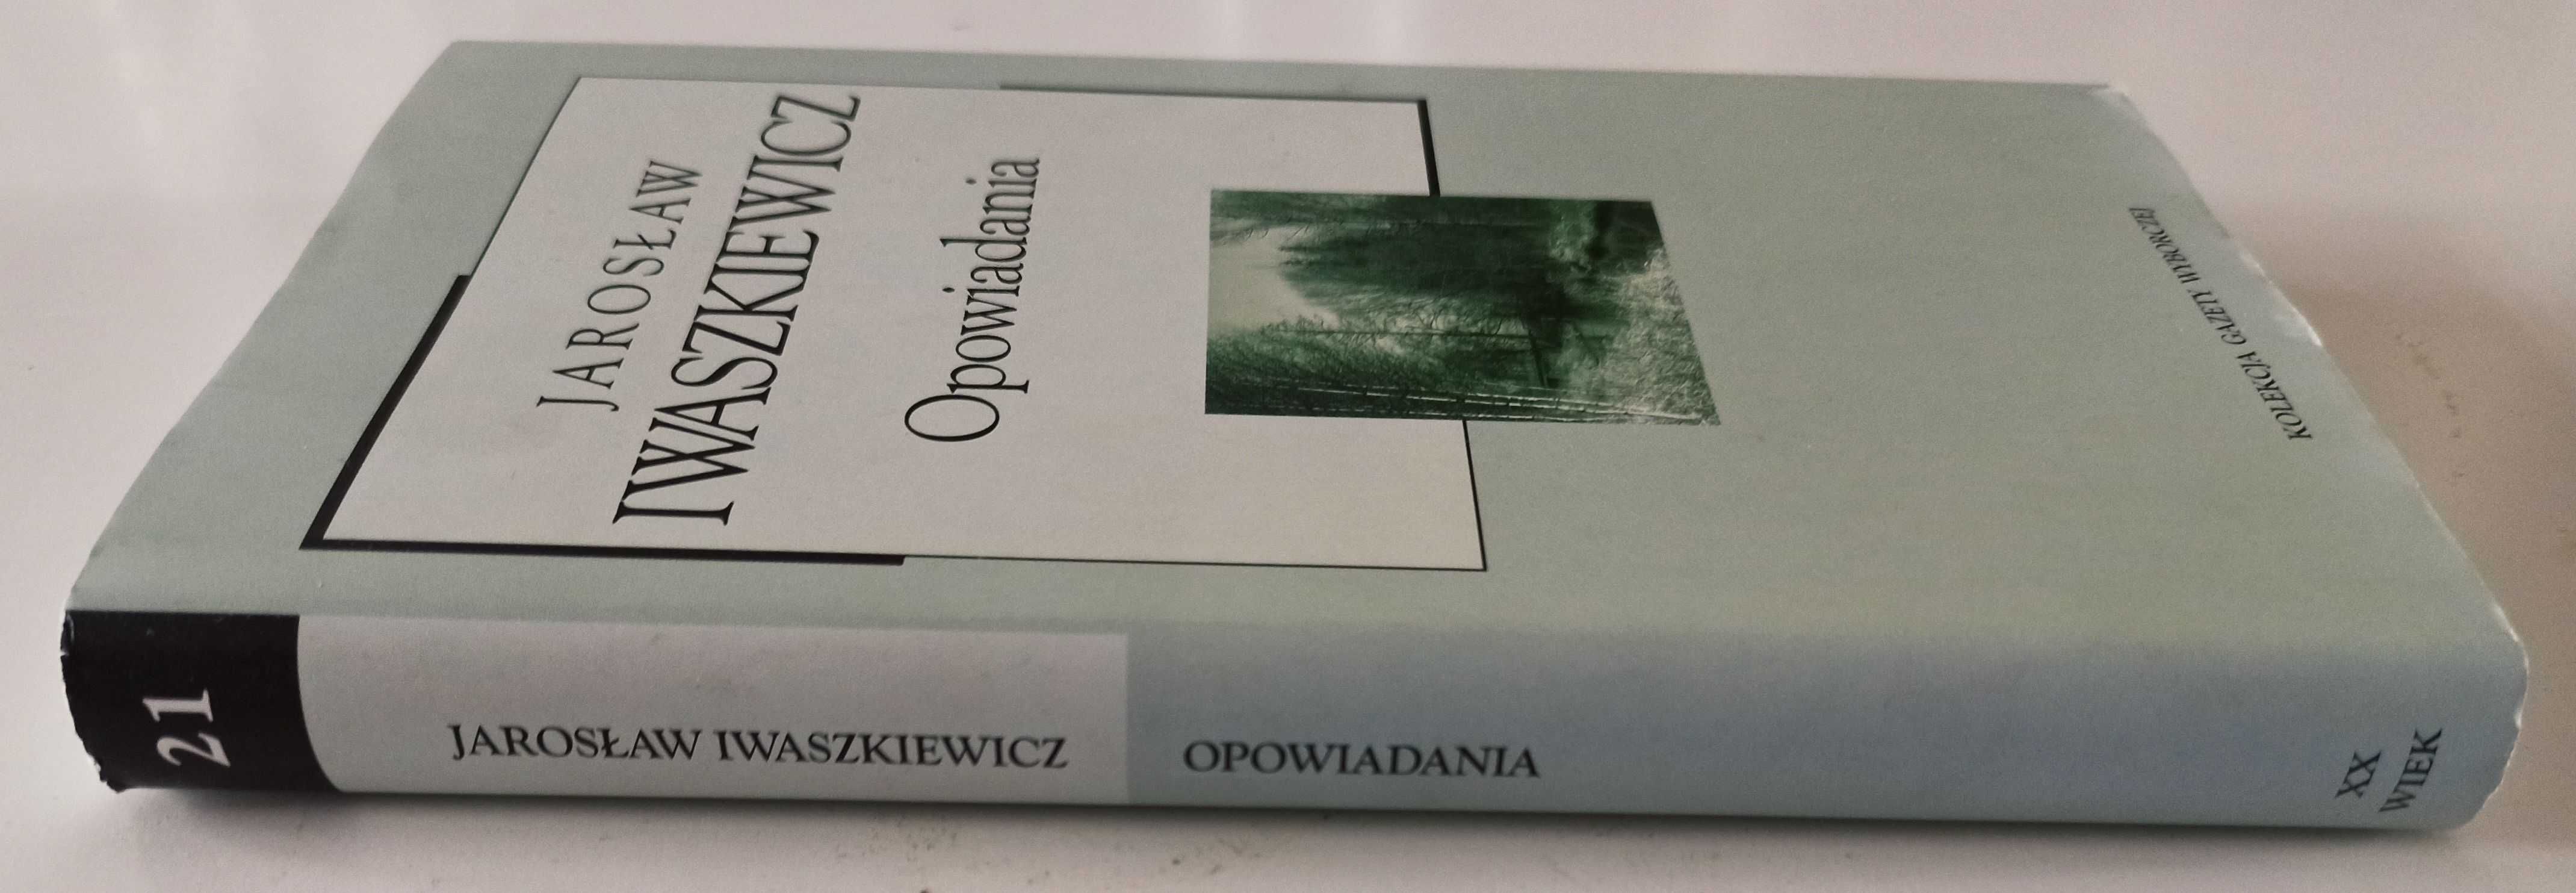 Jarosław Iwaszkiewicz Opowiadania Panny z wilka Brzezina Matka Joanna